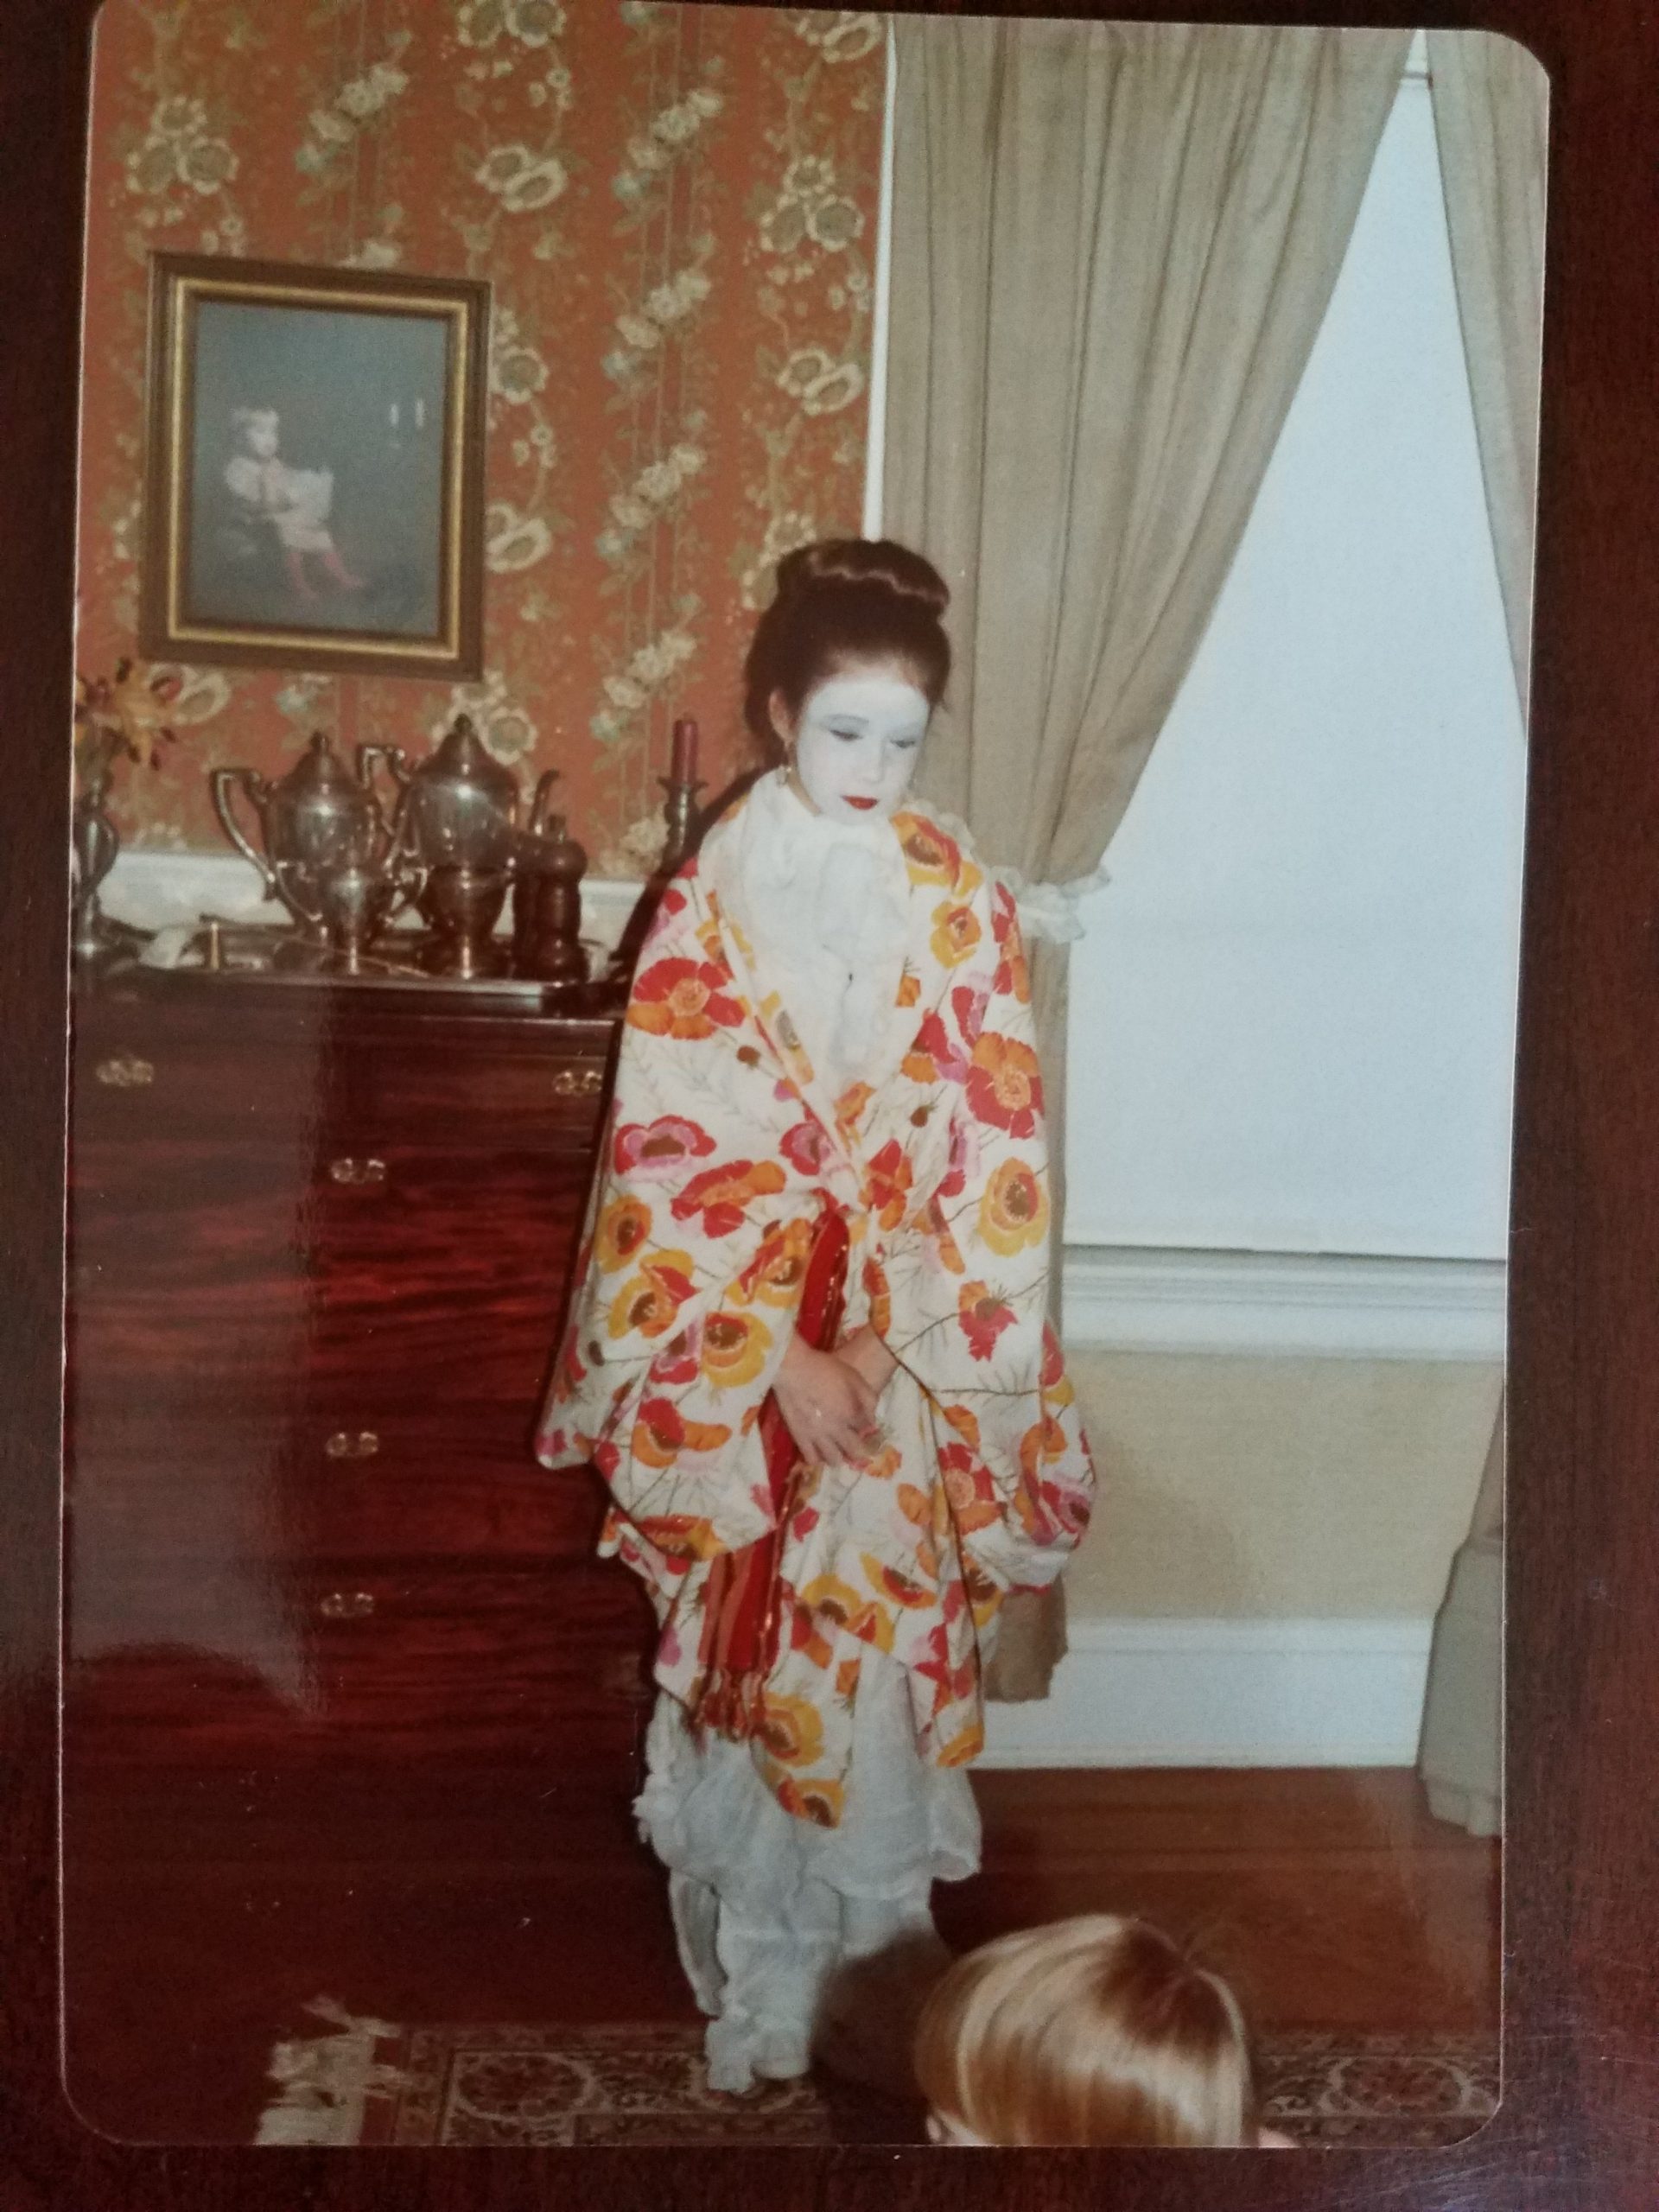 kerry in geisha gear